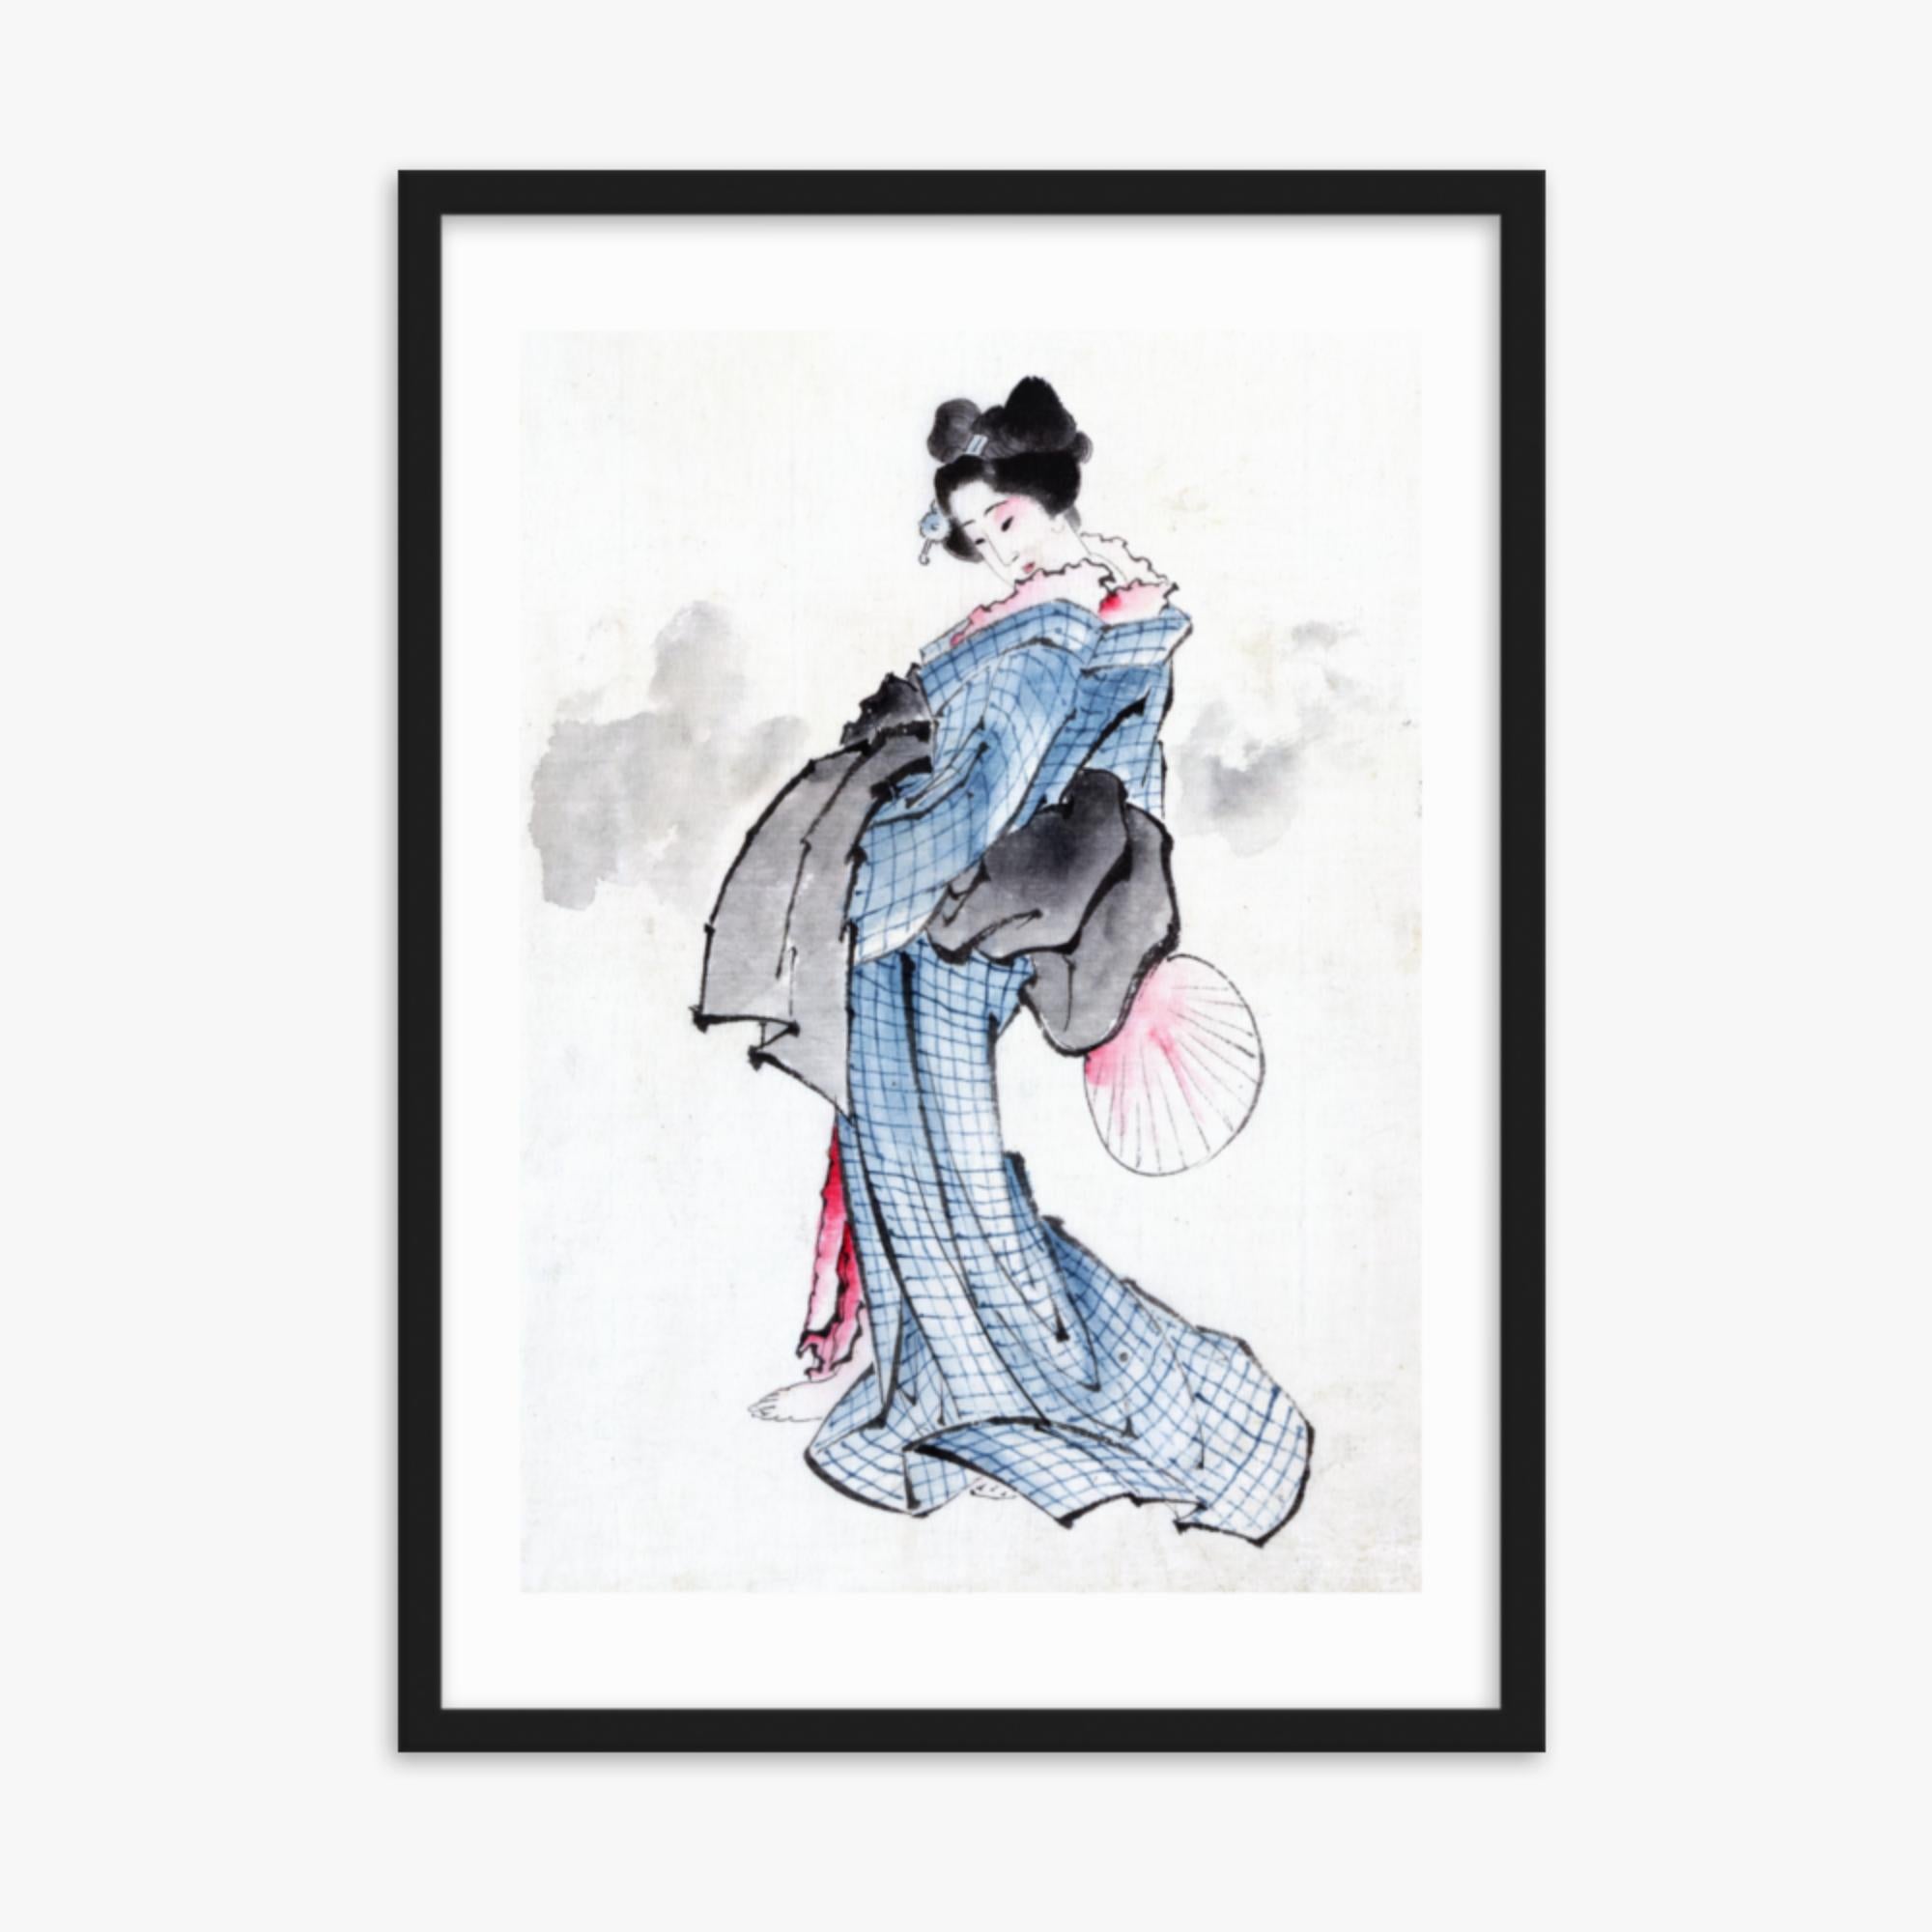 Katsushika Hokusai - Illustration of a Japanese Woman in Kimono 50x70 cm Poster With Black Frame